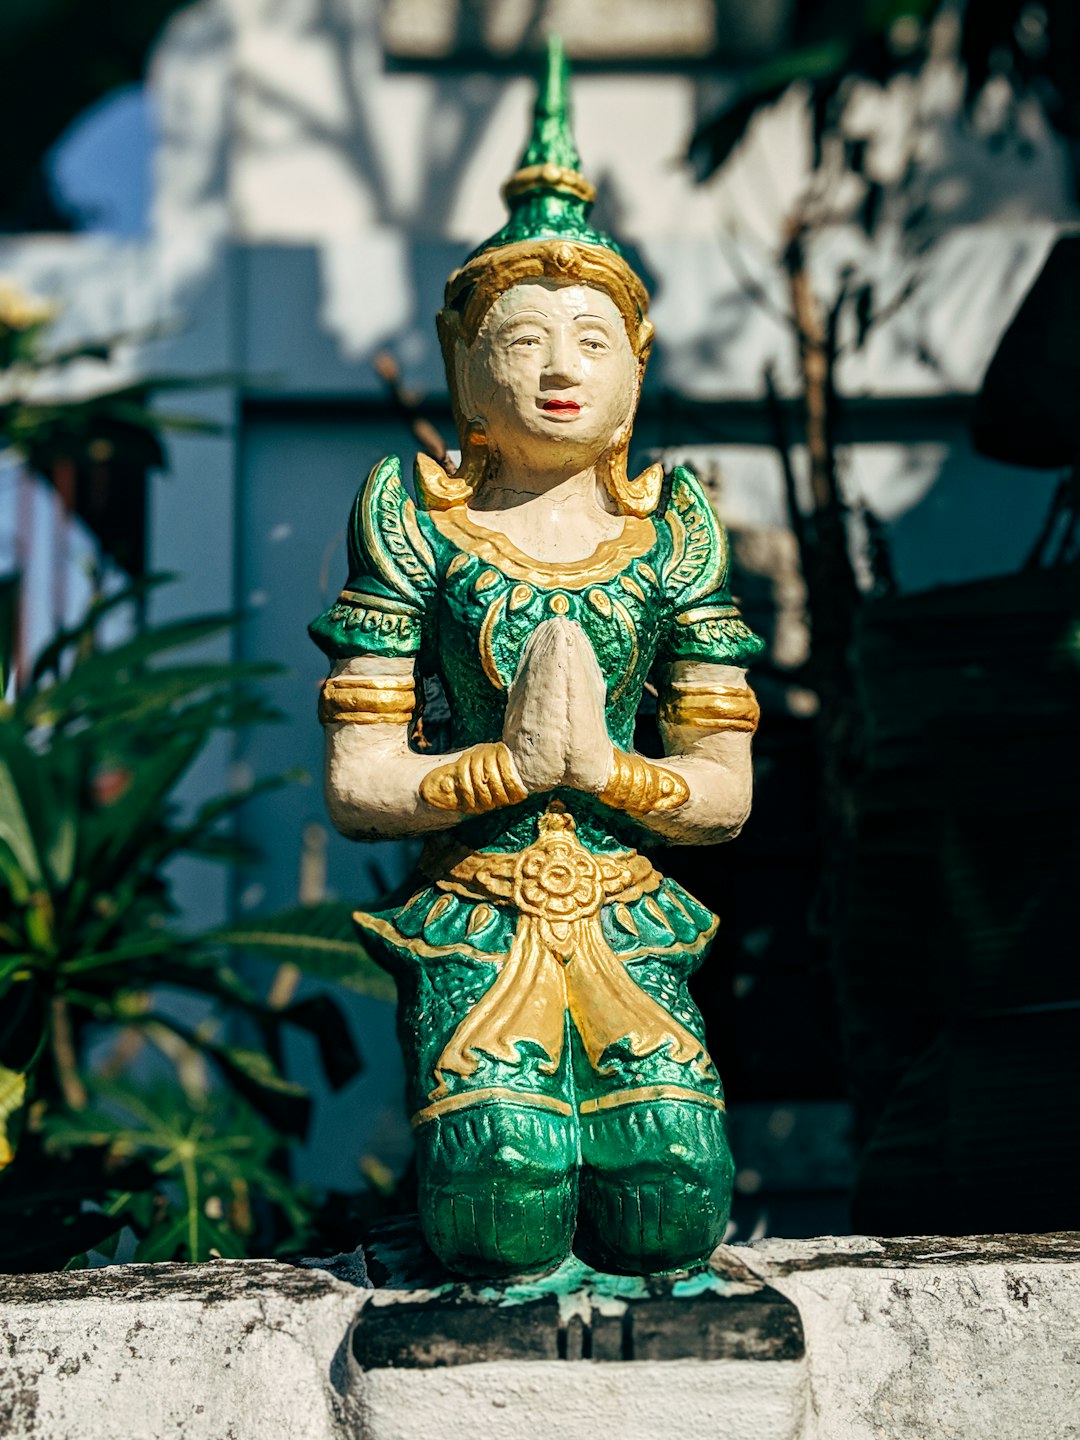 green and yellow ceramic buddha figurine